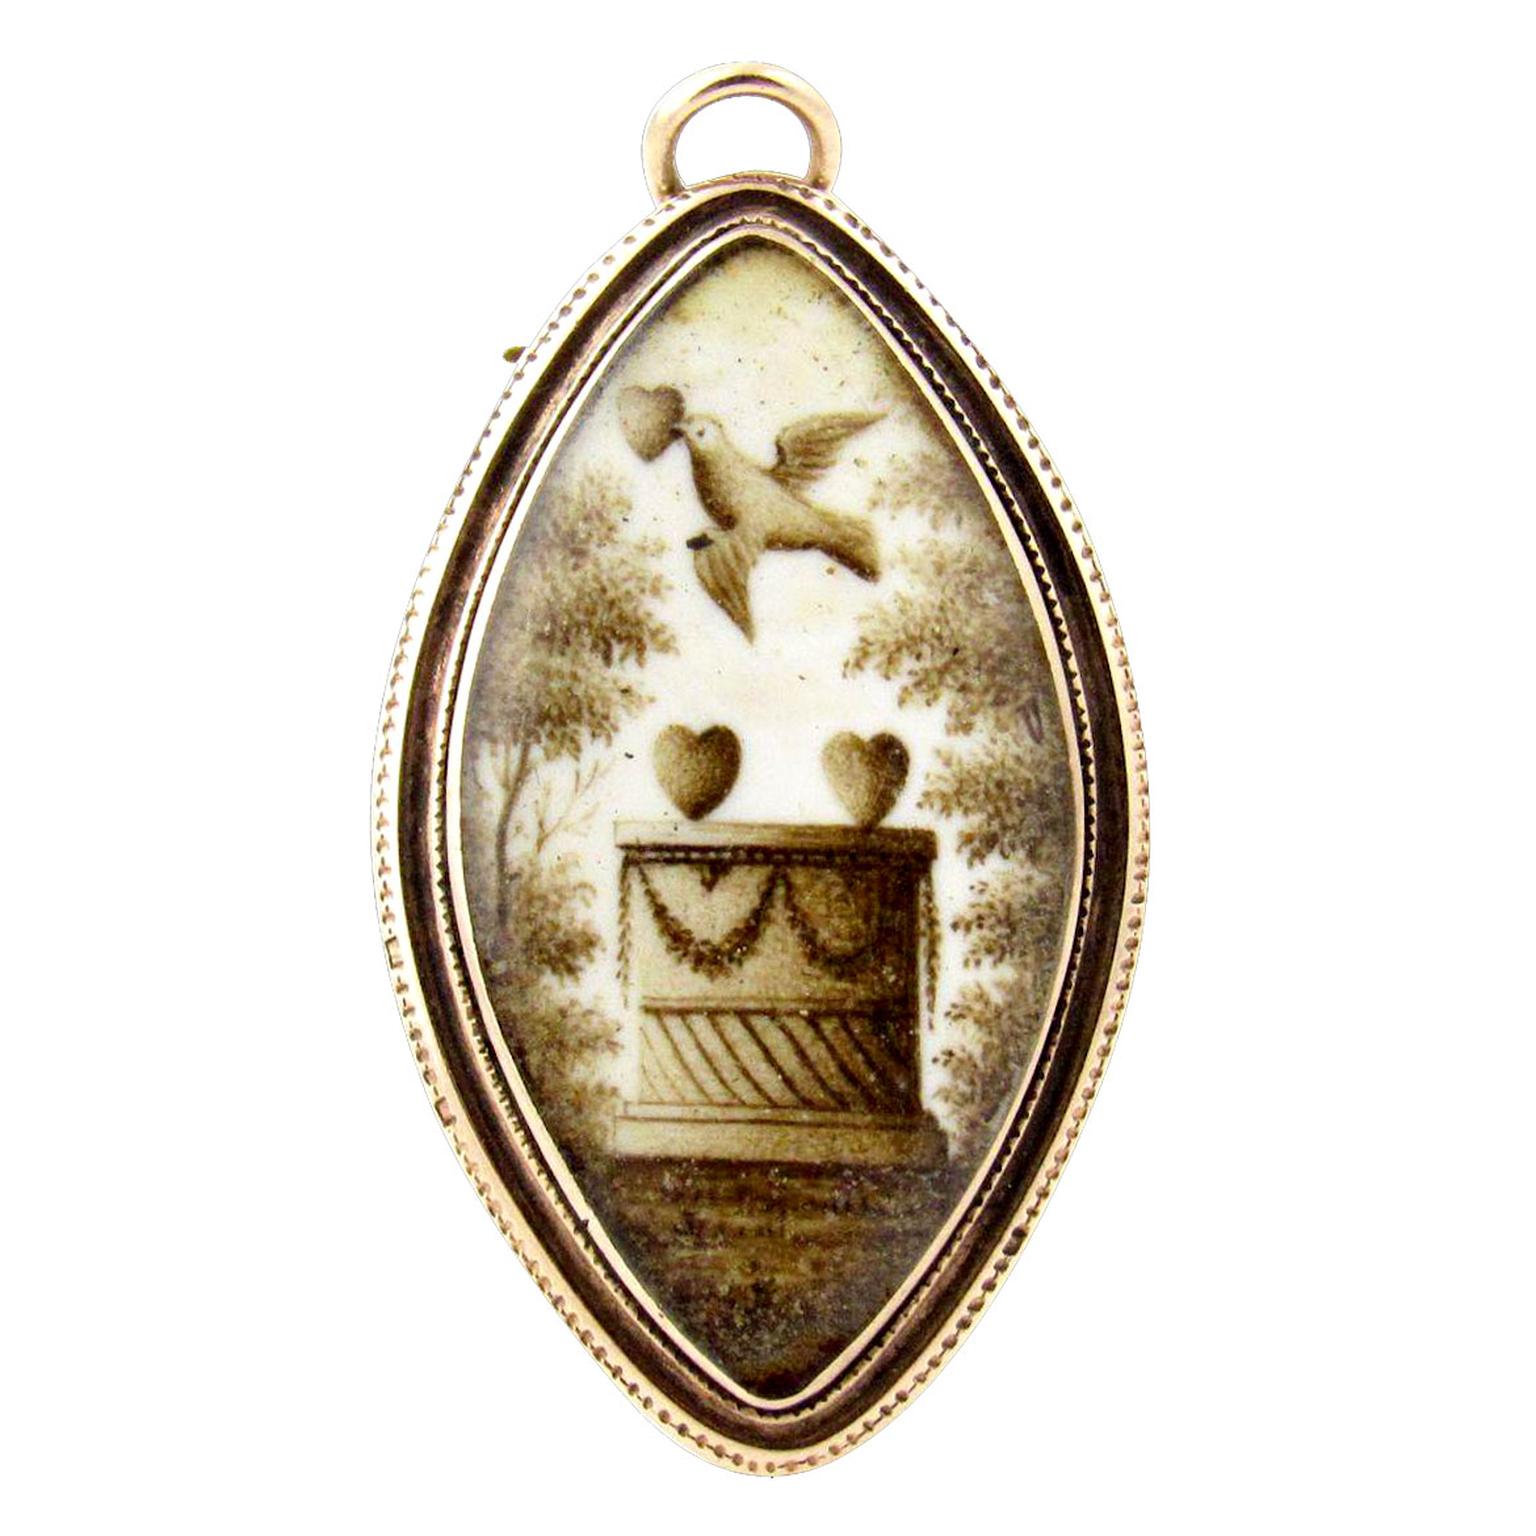 Zestful Vintage Sepia mourning brooch